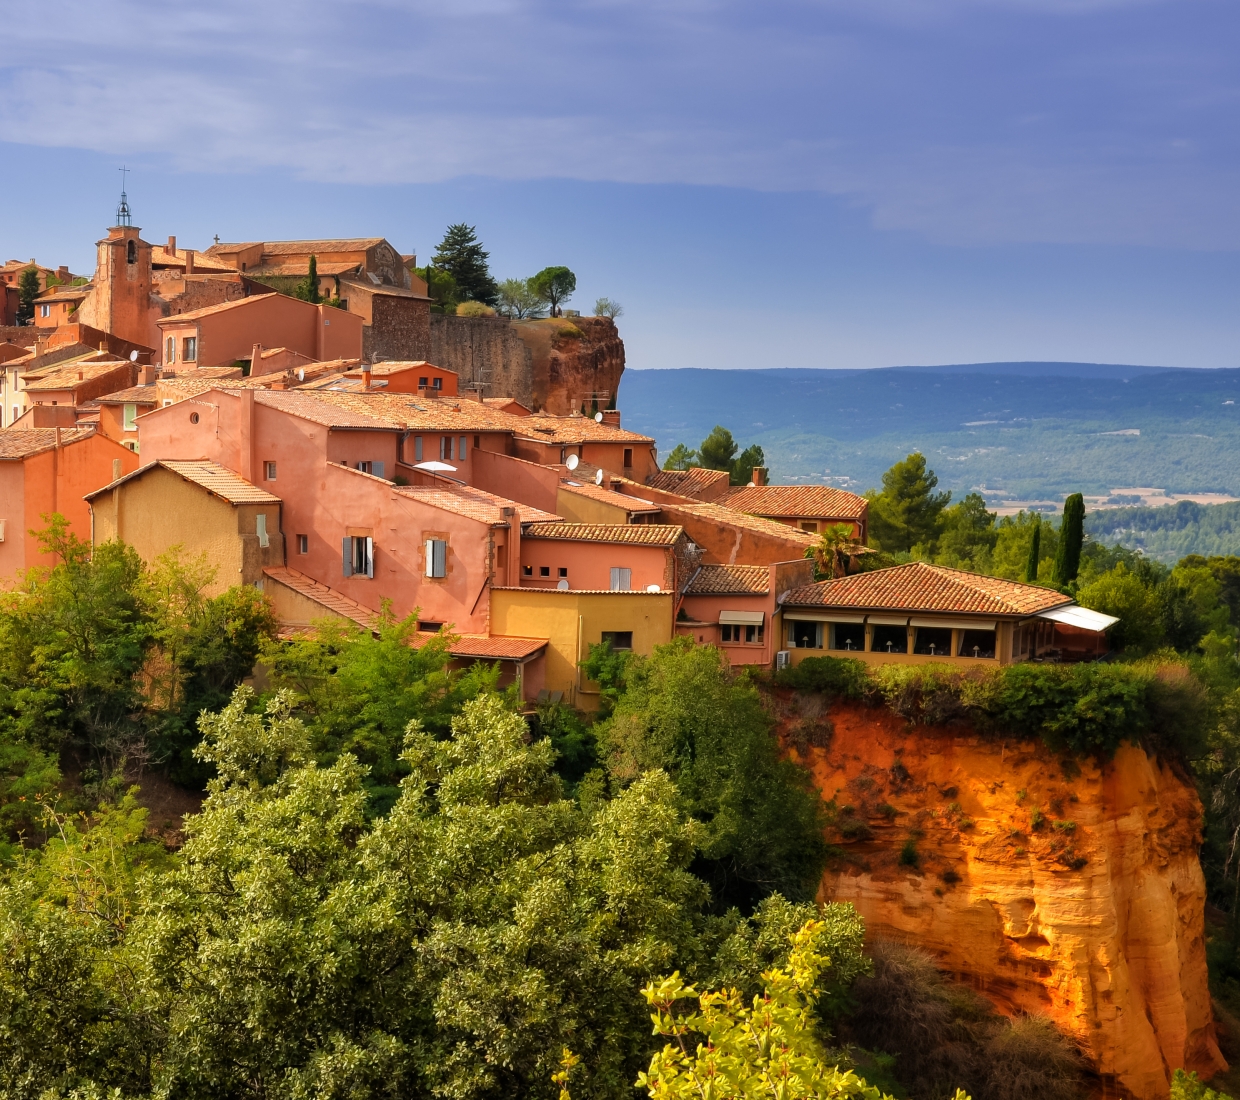 Seleção dos melhores e mais bonitos hotéis e casas de férias em Provença e Côte d’Azur